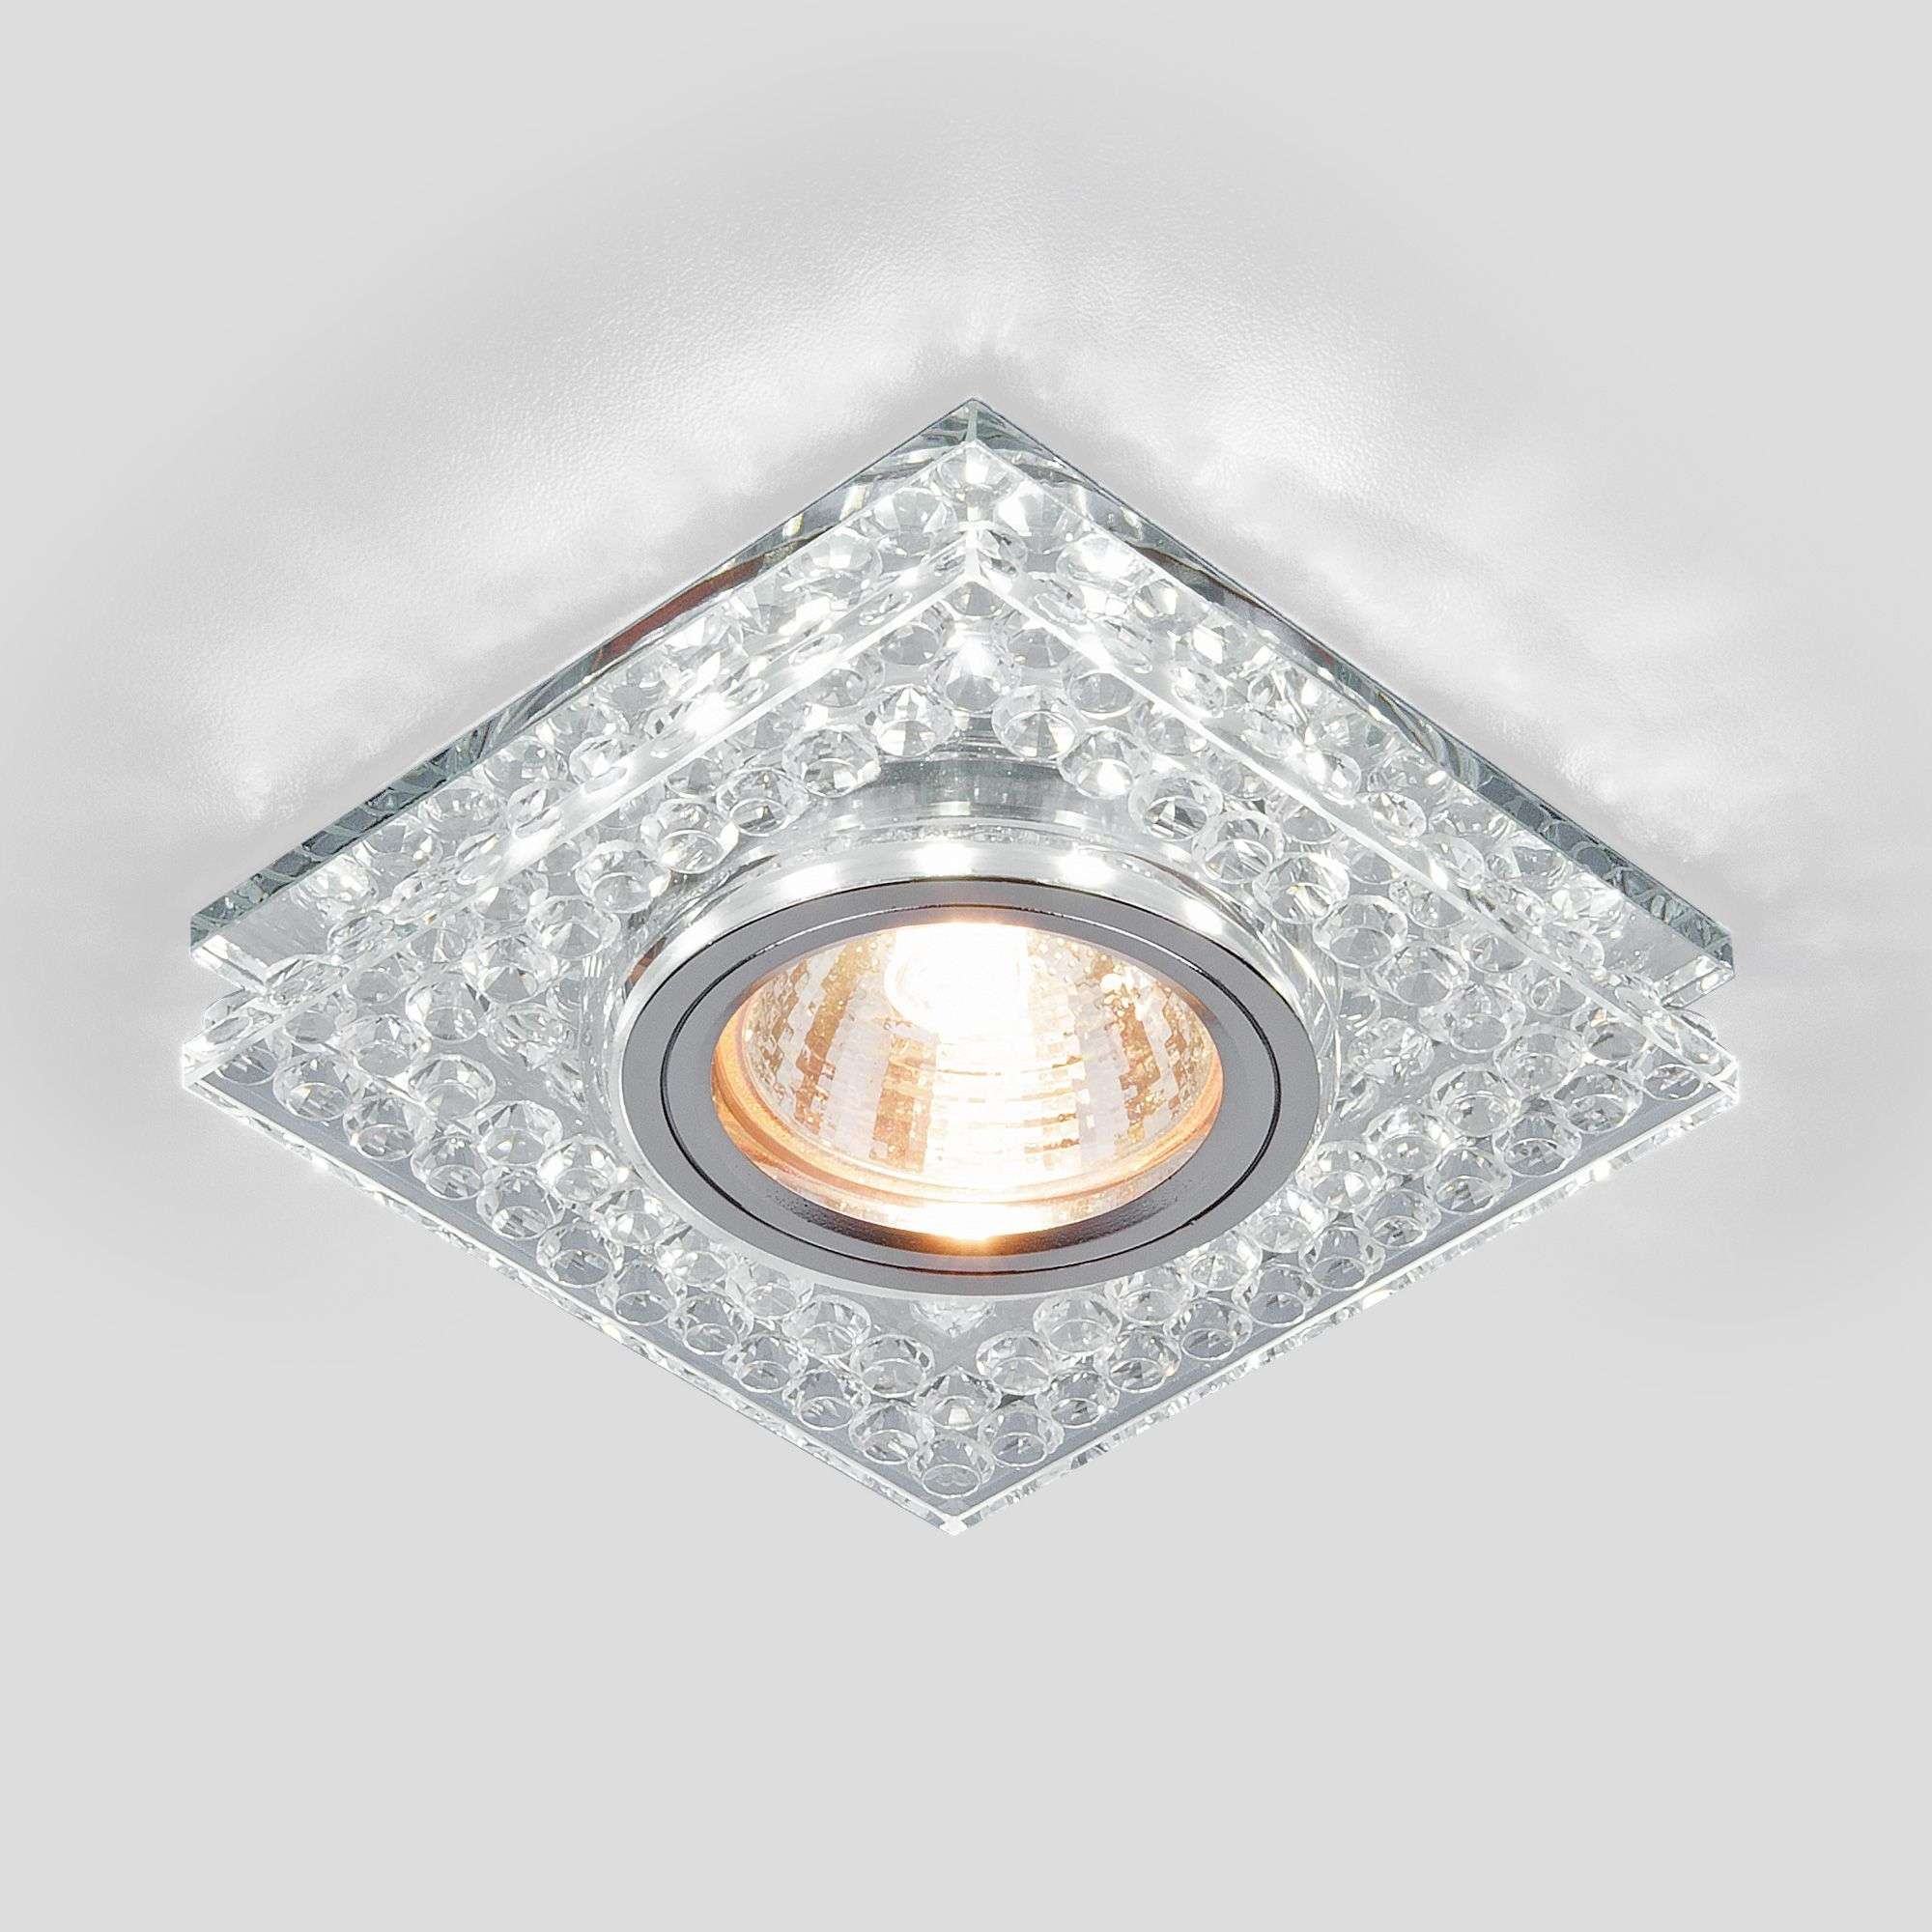 Встраиваемый точечный светильник с подсветкой 8391 MR16 CL/SL прозрачный/серебро